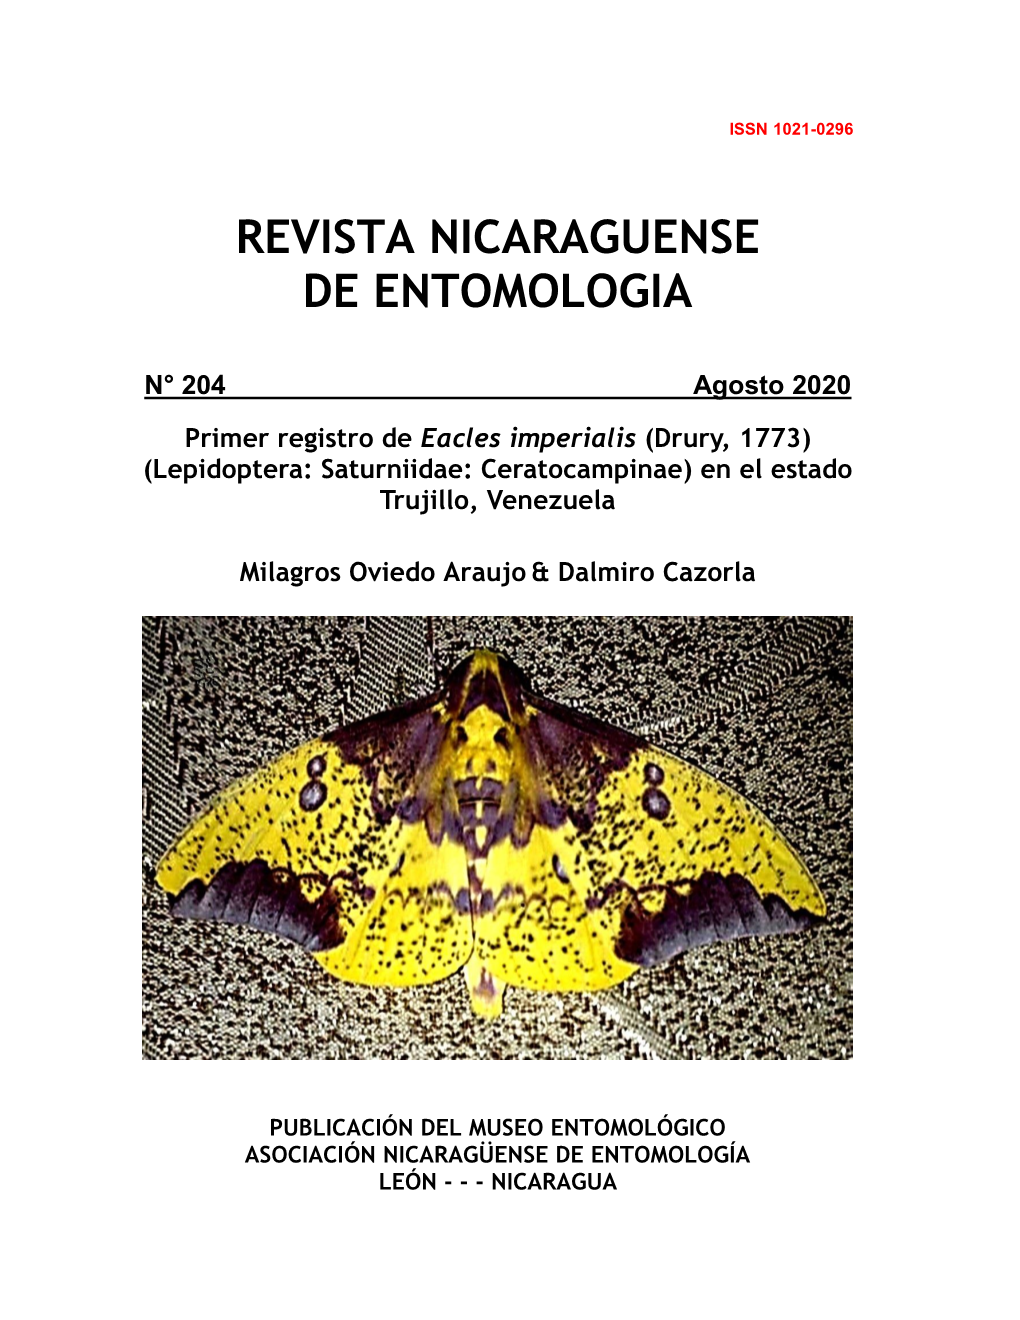 Primer Registro De Eacles Imperialis (Drury, 1773) (Lepidoptera: Saturniidae: Ceratocampinae) En El Estado Trujillo, Venezuela